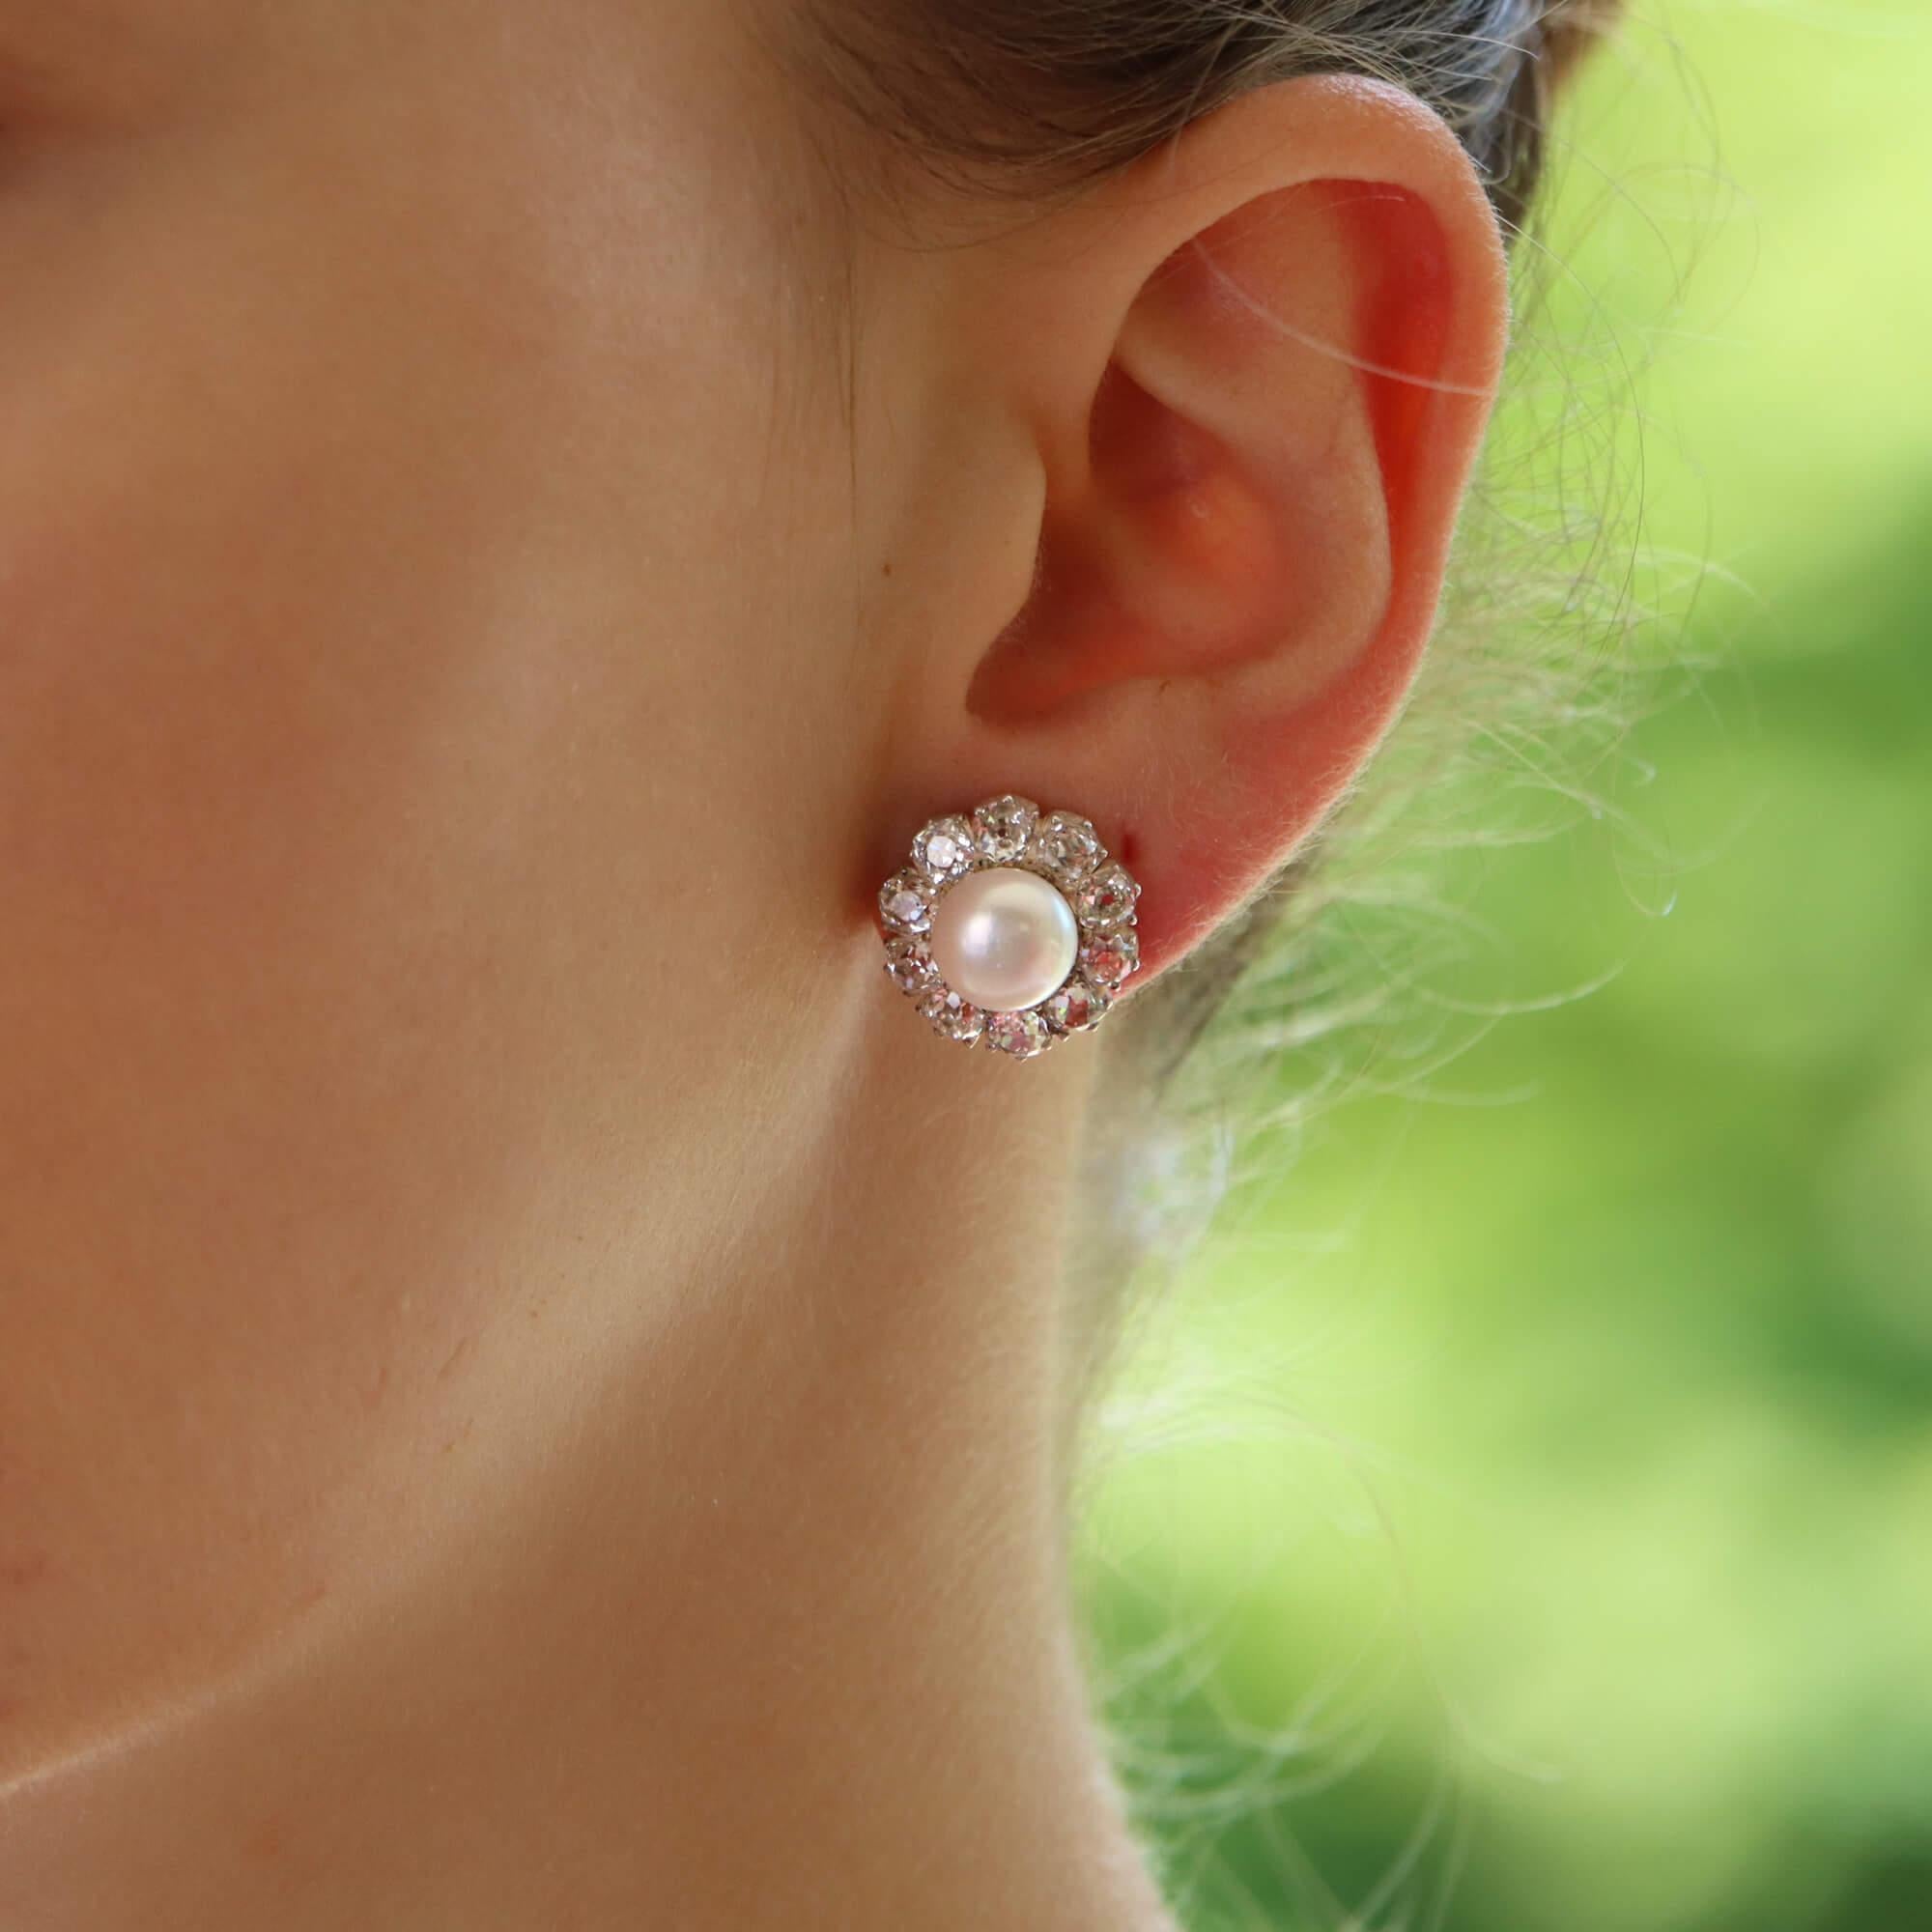 Ein schönes, klassisches Paar viktorianischer Perlen- und Diamantcluster-Ohrringe aus 18 Karat Gelbgold.

Jeder Ohrring besteht aus einer wunderschönen zentralen Bouton-Perle mit einem herrlich leuchtenden Glanz. Die Perle ist dann von einem Halo